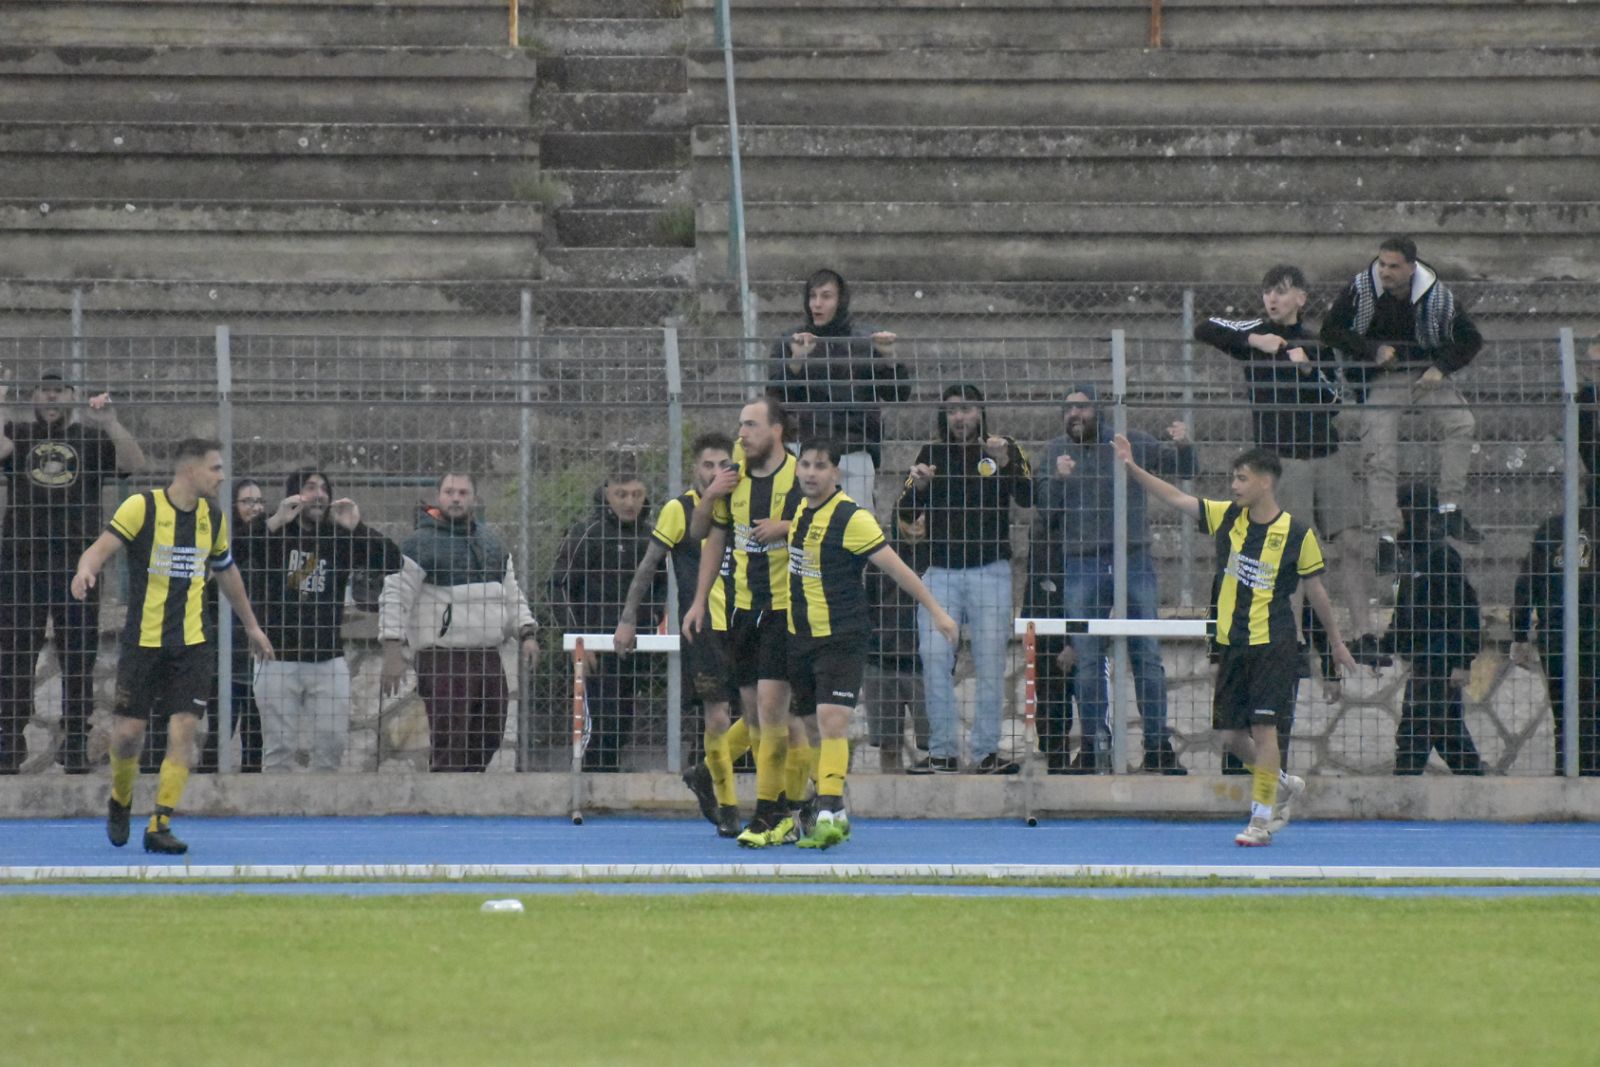 Άρης Φωτολίβους – Μακεδονικός Αλιστράτης 1-0: Μεγάλο ντέρμπι που κρίθηκε στην παράταση με γκολ του Ευσταθιάδη